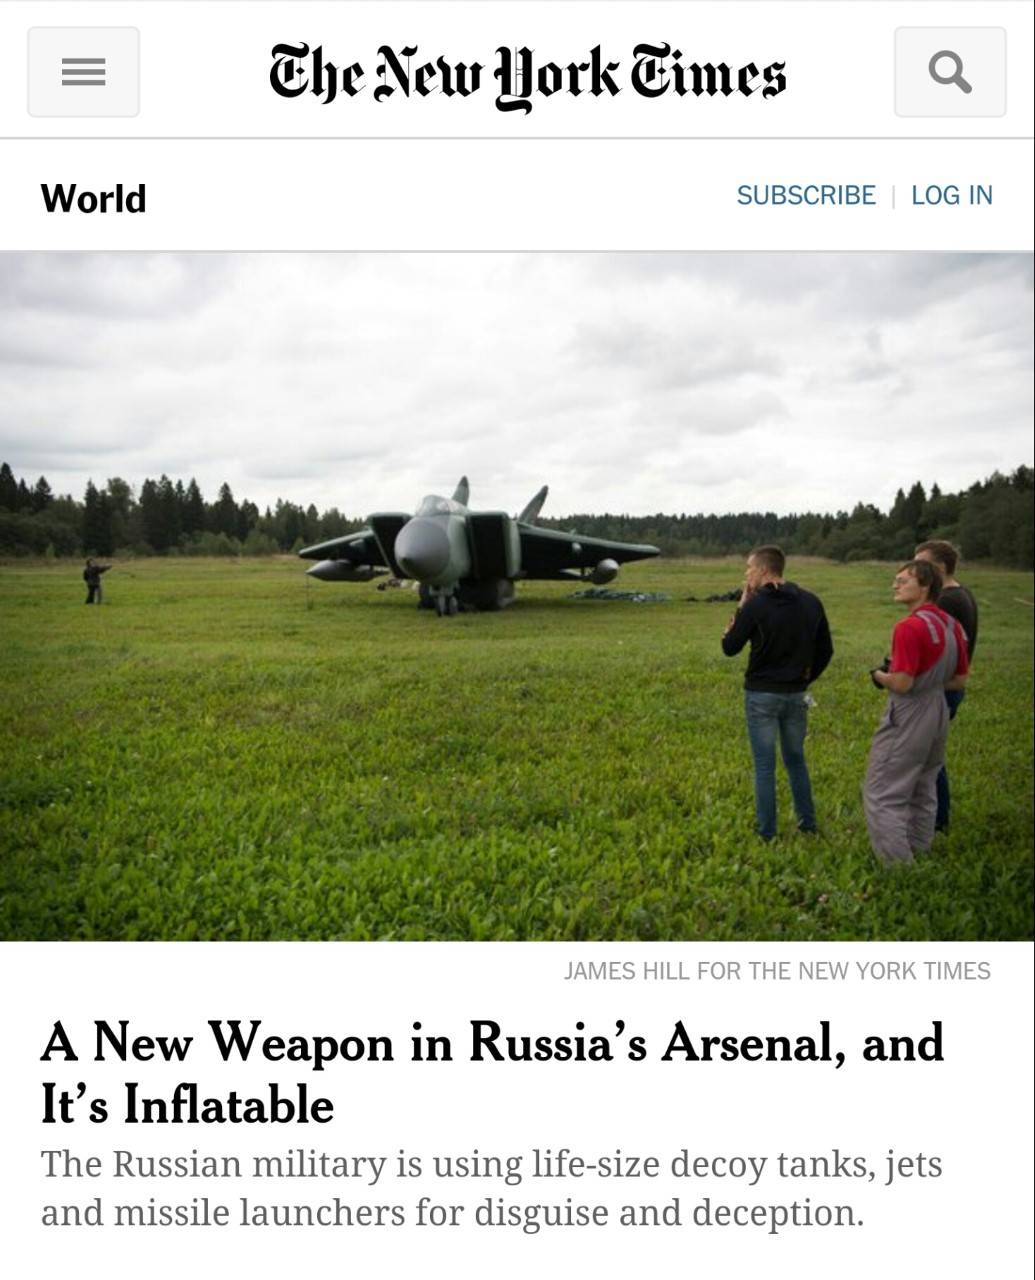 Carri armati, missili e caccia: ecco l'arsenale gonfiabile di Putin